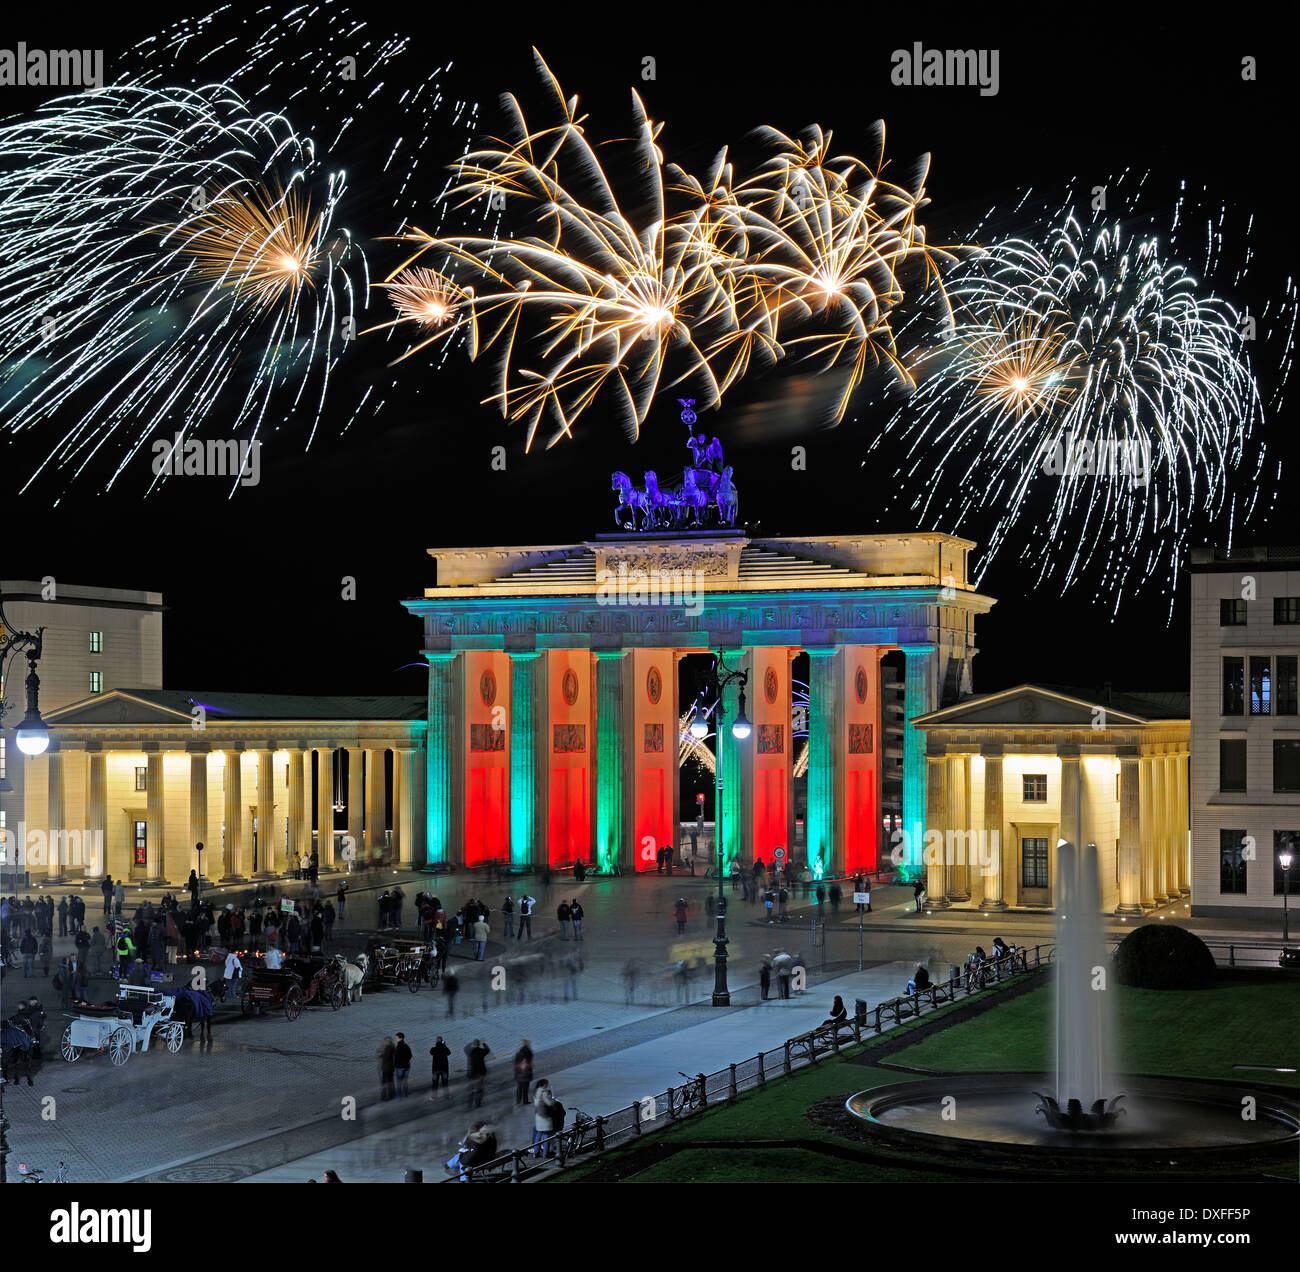 Brandenburger Tor, Brandenburg Gate, Pariser Platz, New Year's Eve